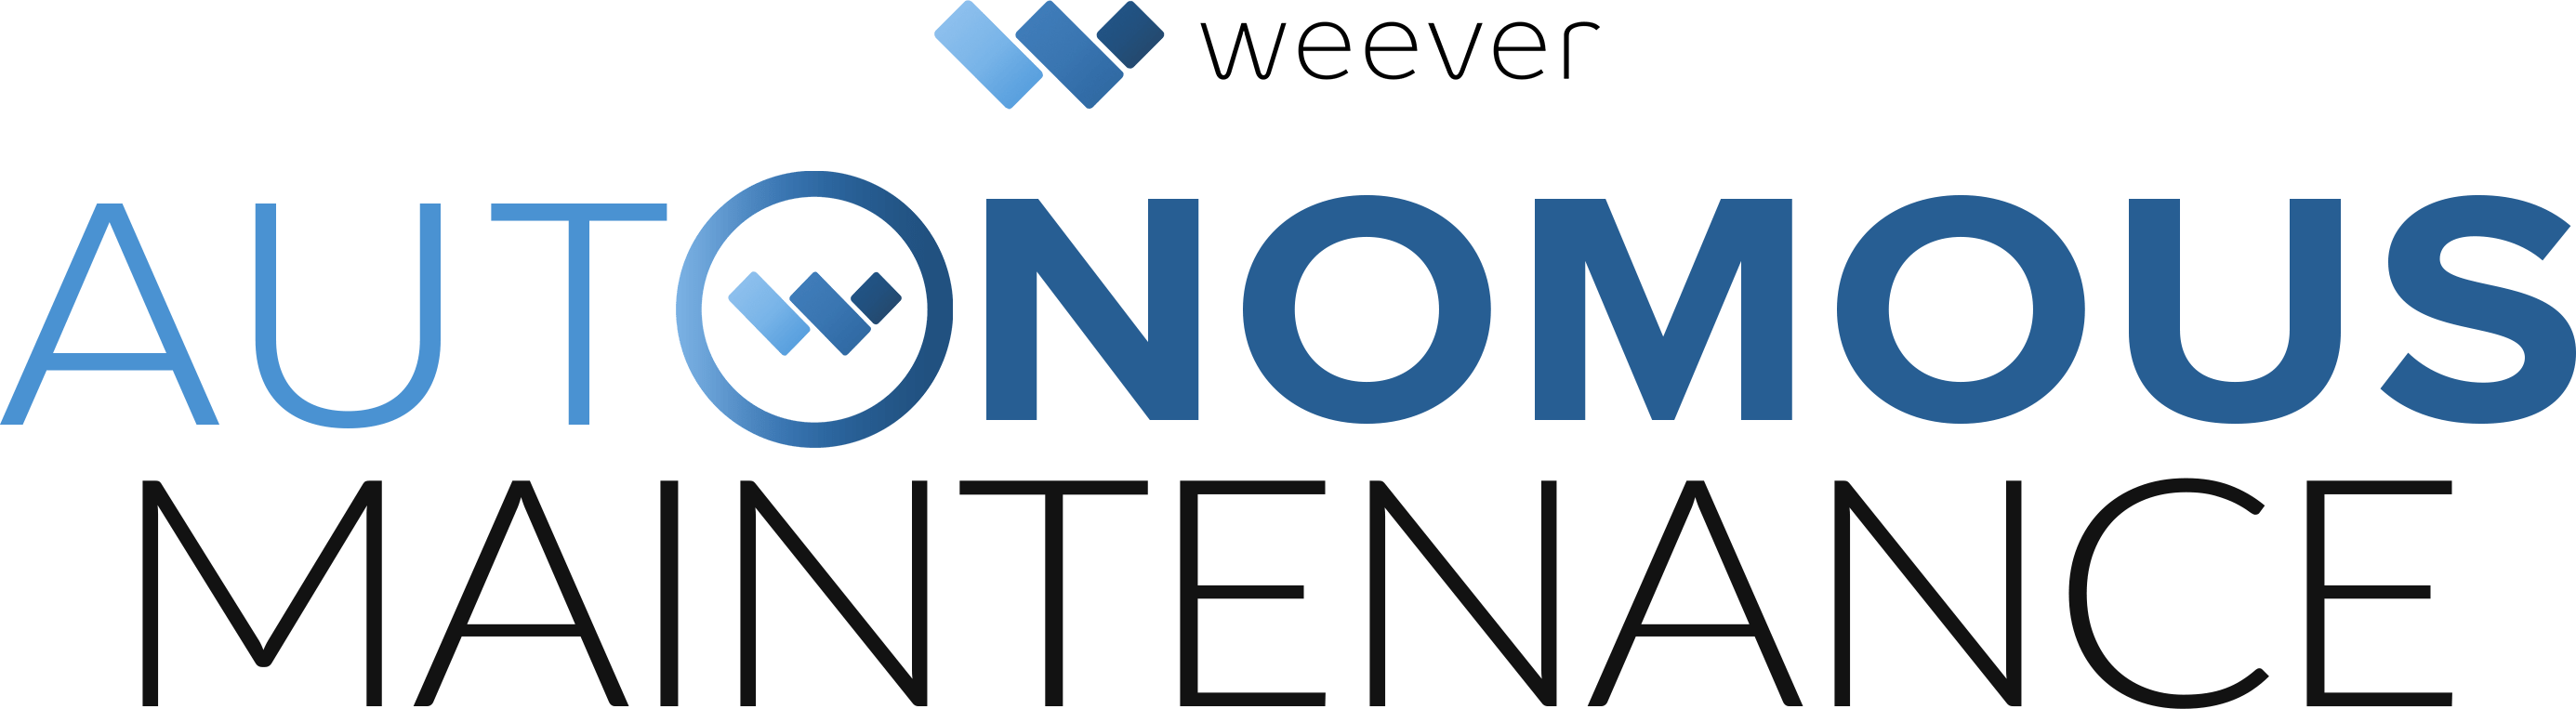 Autonomous Maintenance logo Weever-min